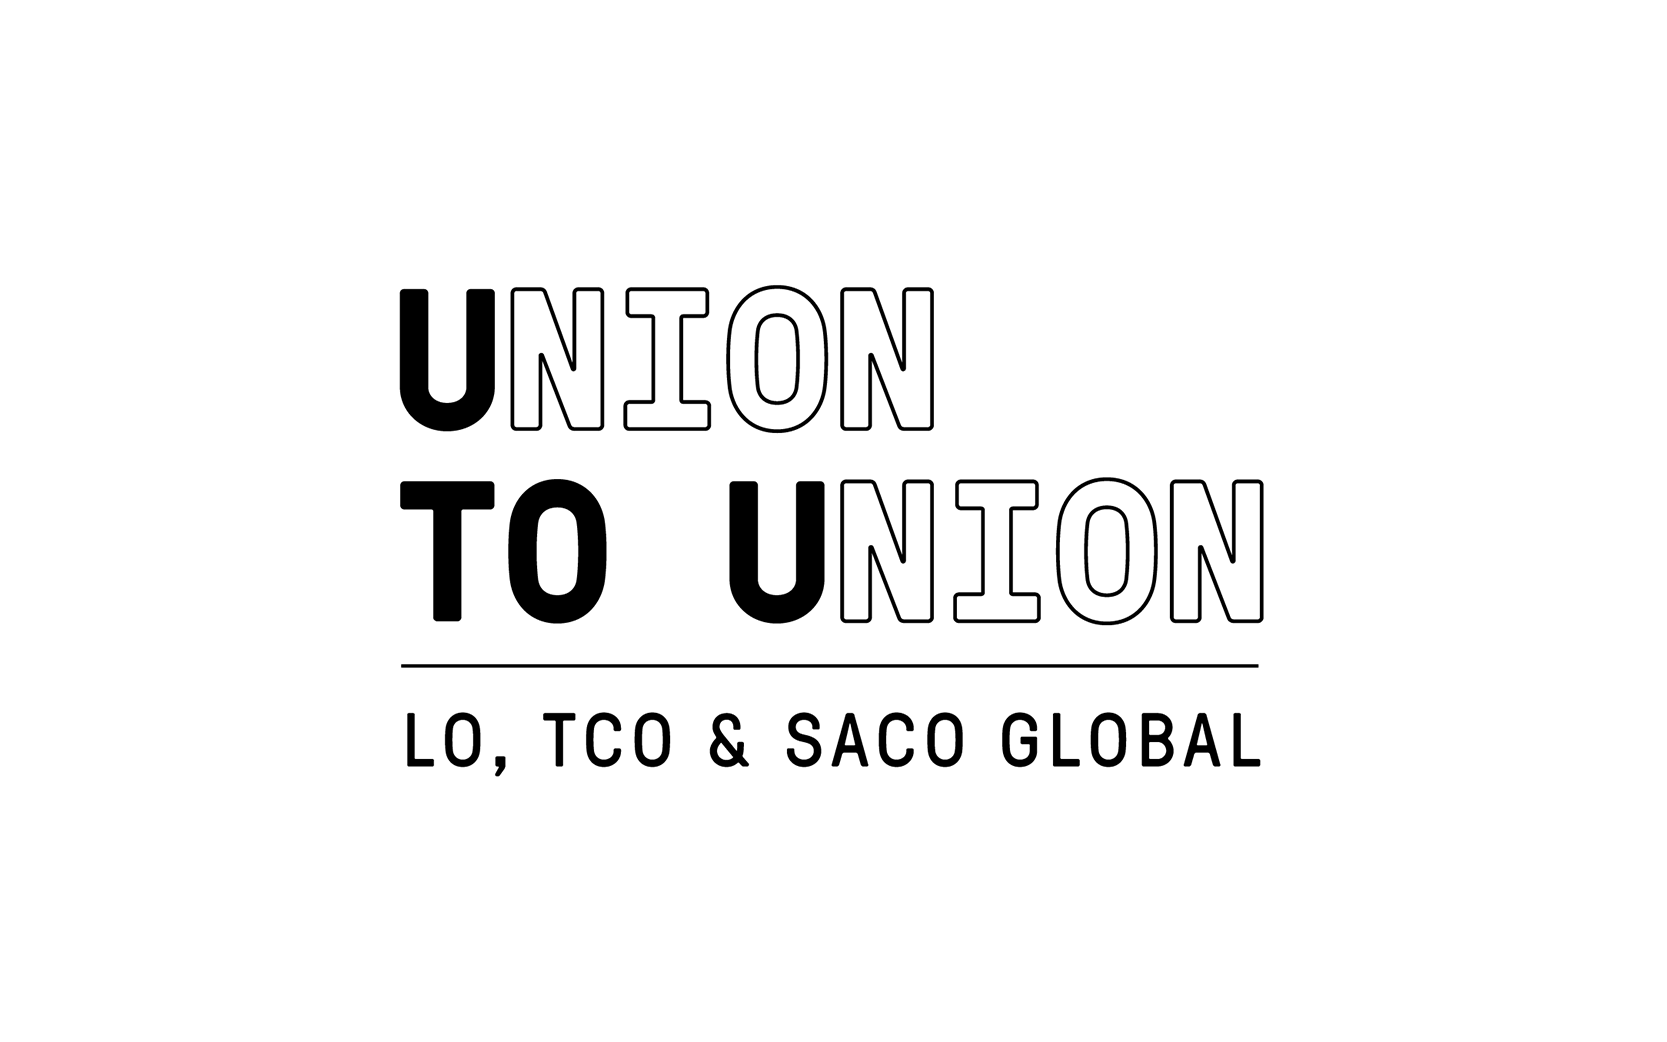 Union to Union logotyp